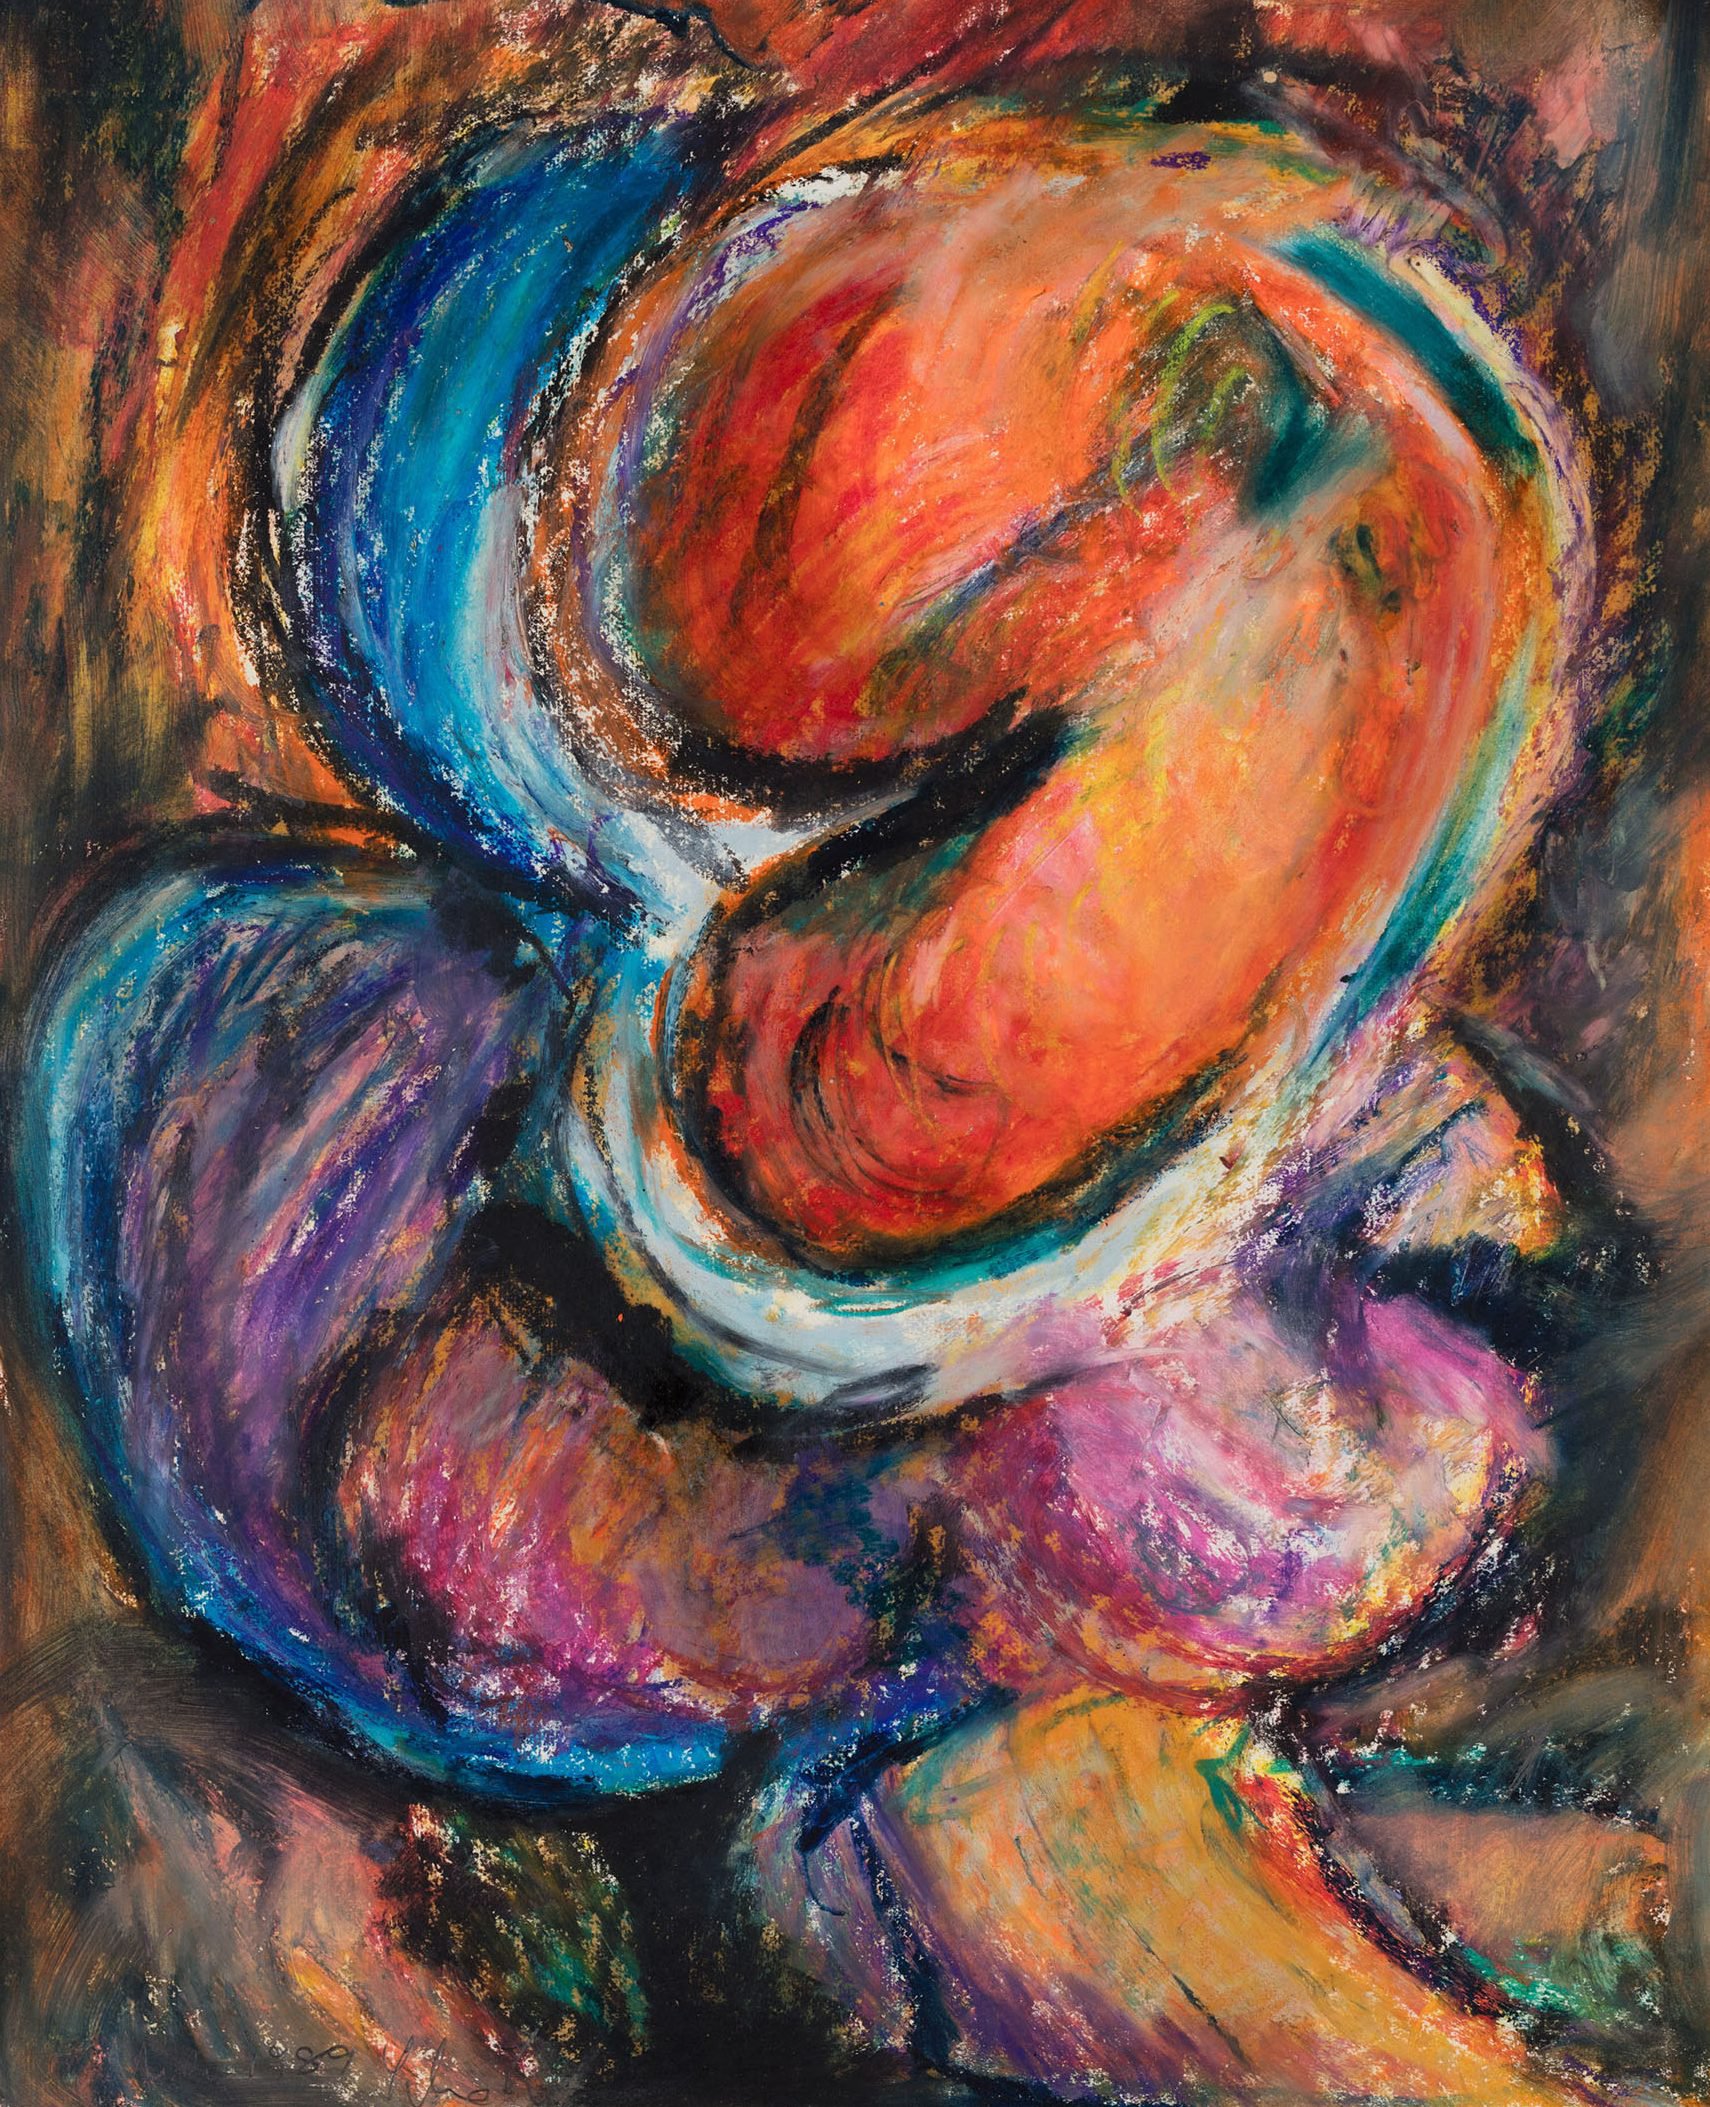 Liliane Lijn, Bottoms Up, detail, oil pastel on paper, 48.5 x 39 cm (unframed), 1991